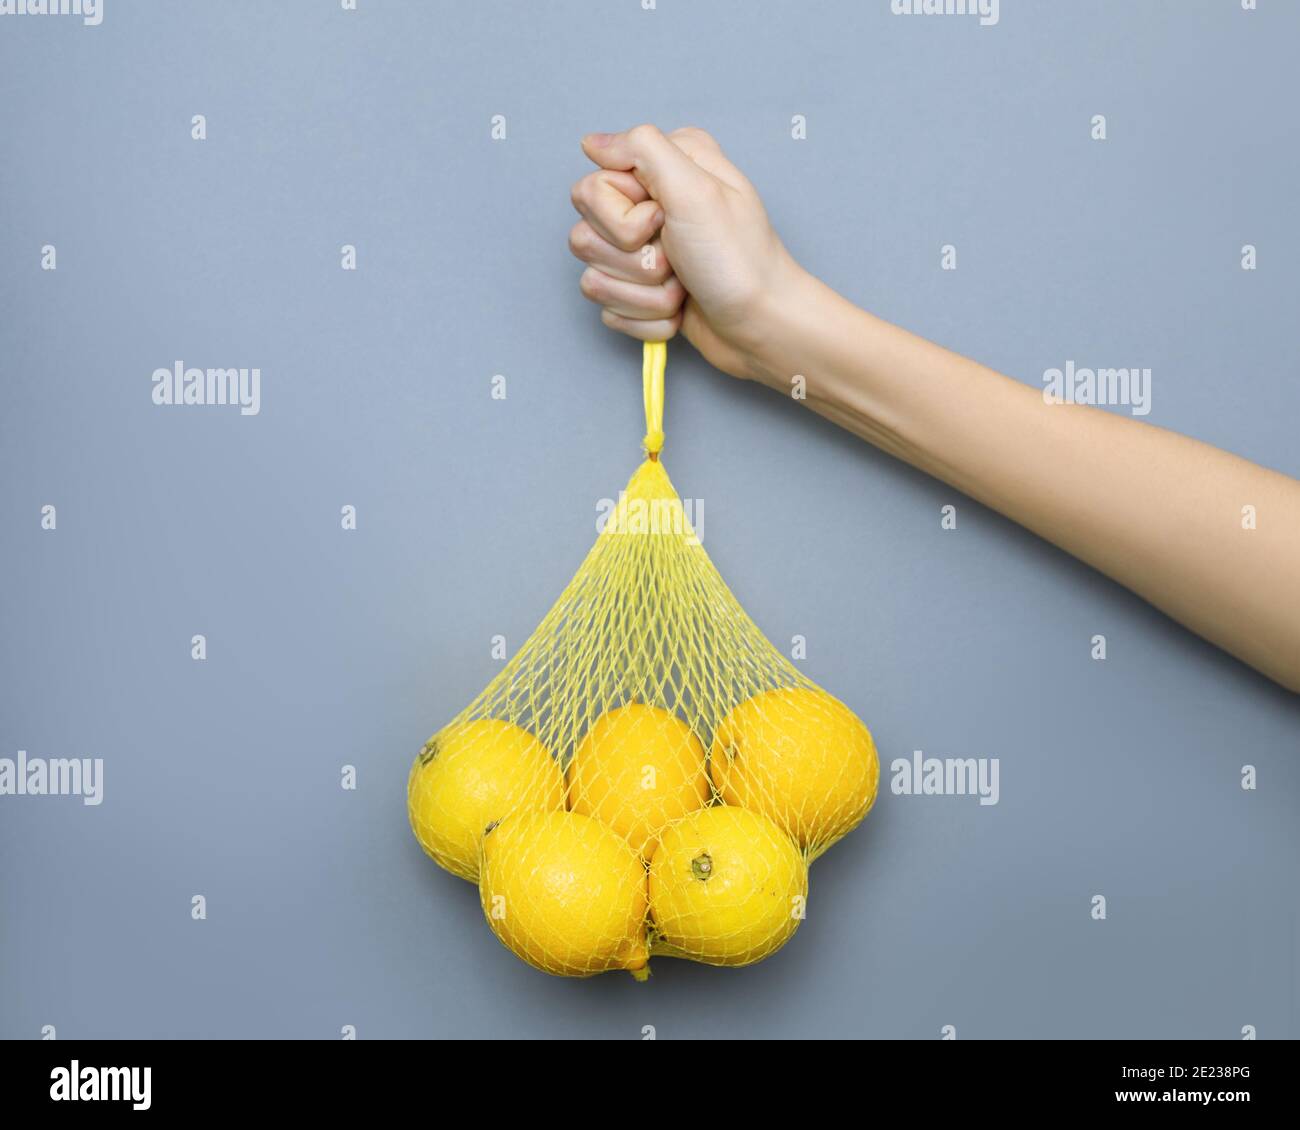 mujer mano sosteniendo la malla de paquete amarillo con limones sobre fondo gris. Concepto de color 2021, alimentación saludable, consumo moderado Foto de stock